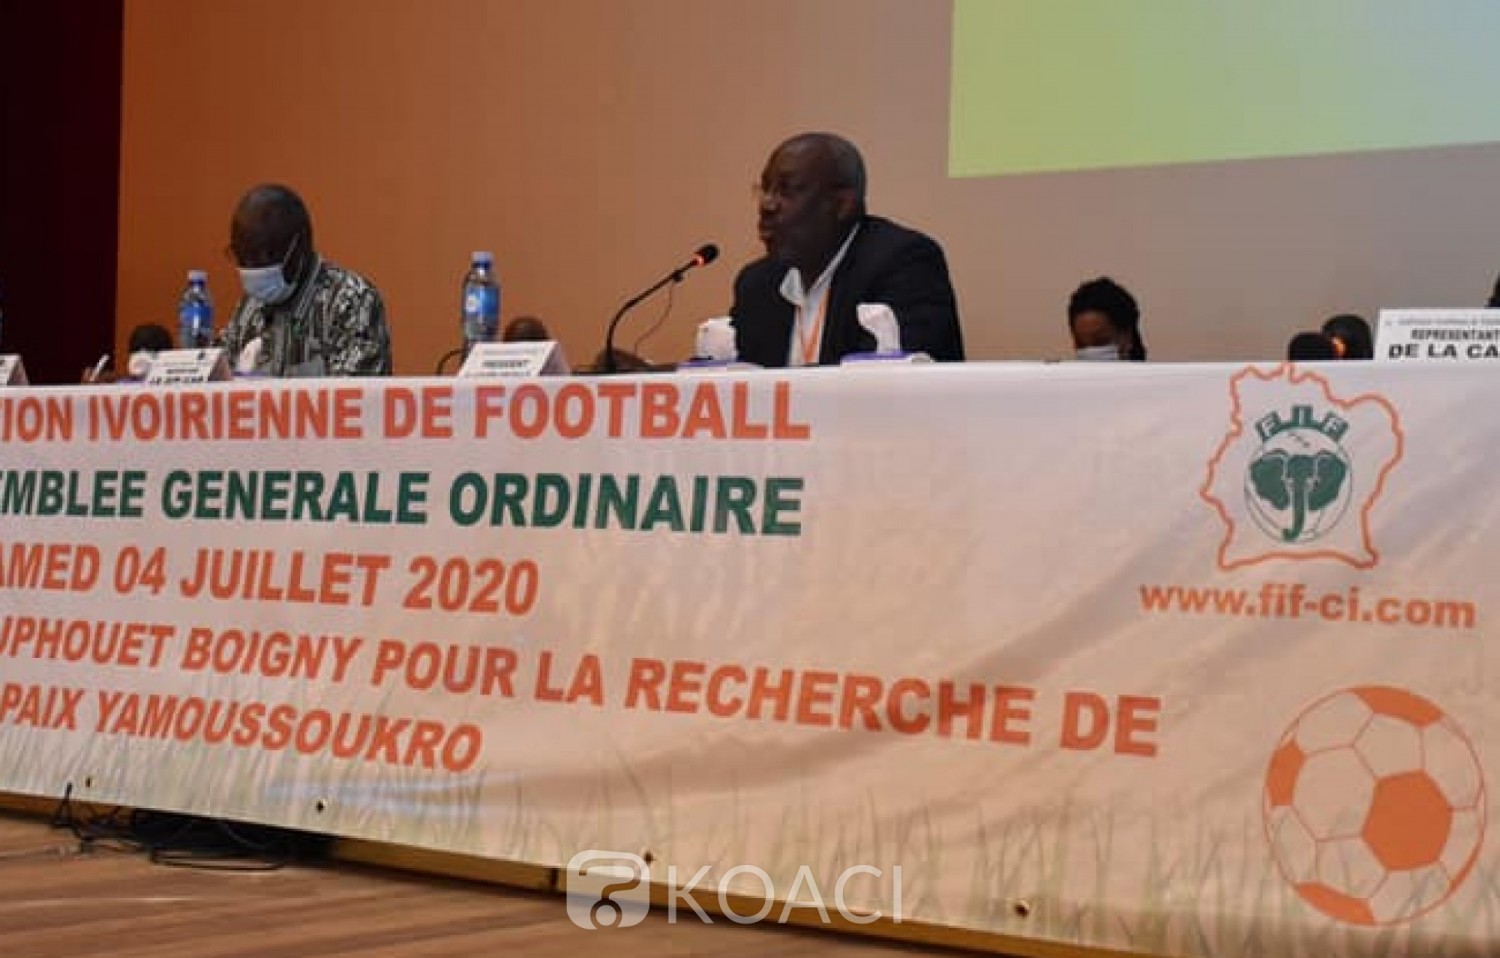 Côte d'Ivoire : FIF, quitus donné à la gestion de Sidy Diallo, René Diby désigné président du comité électoral pour le vote du 5 septembre